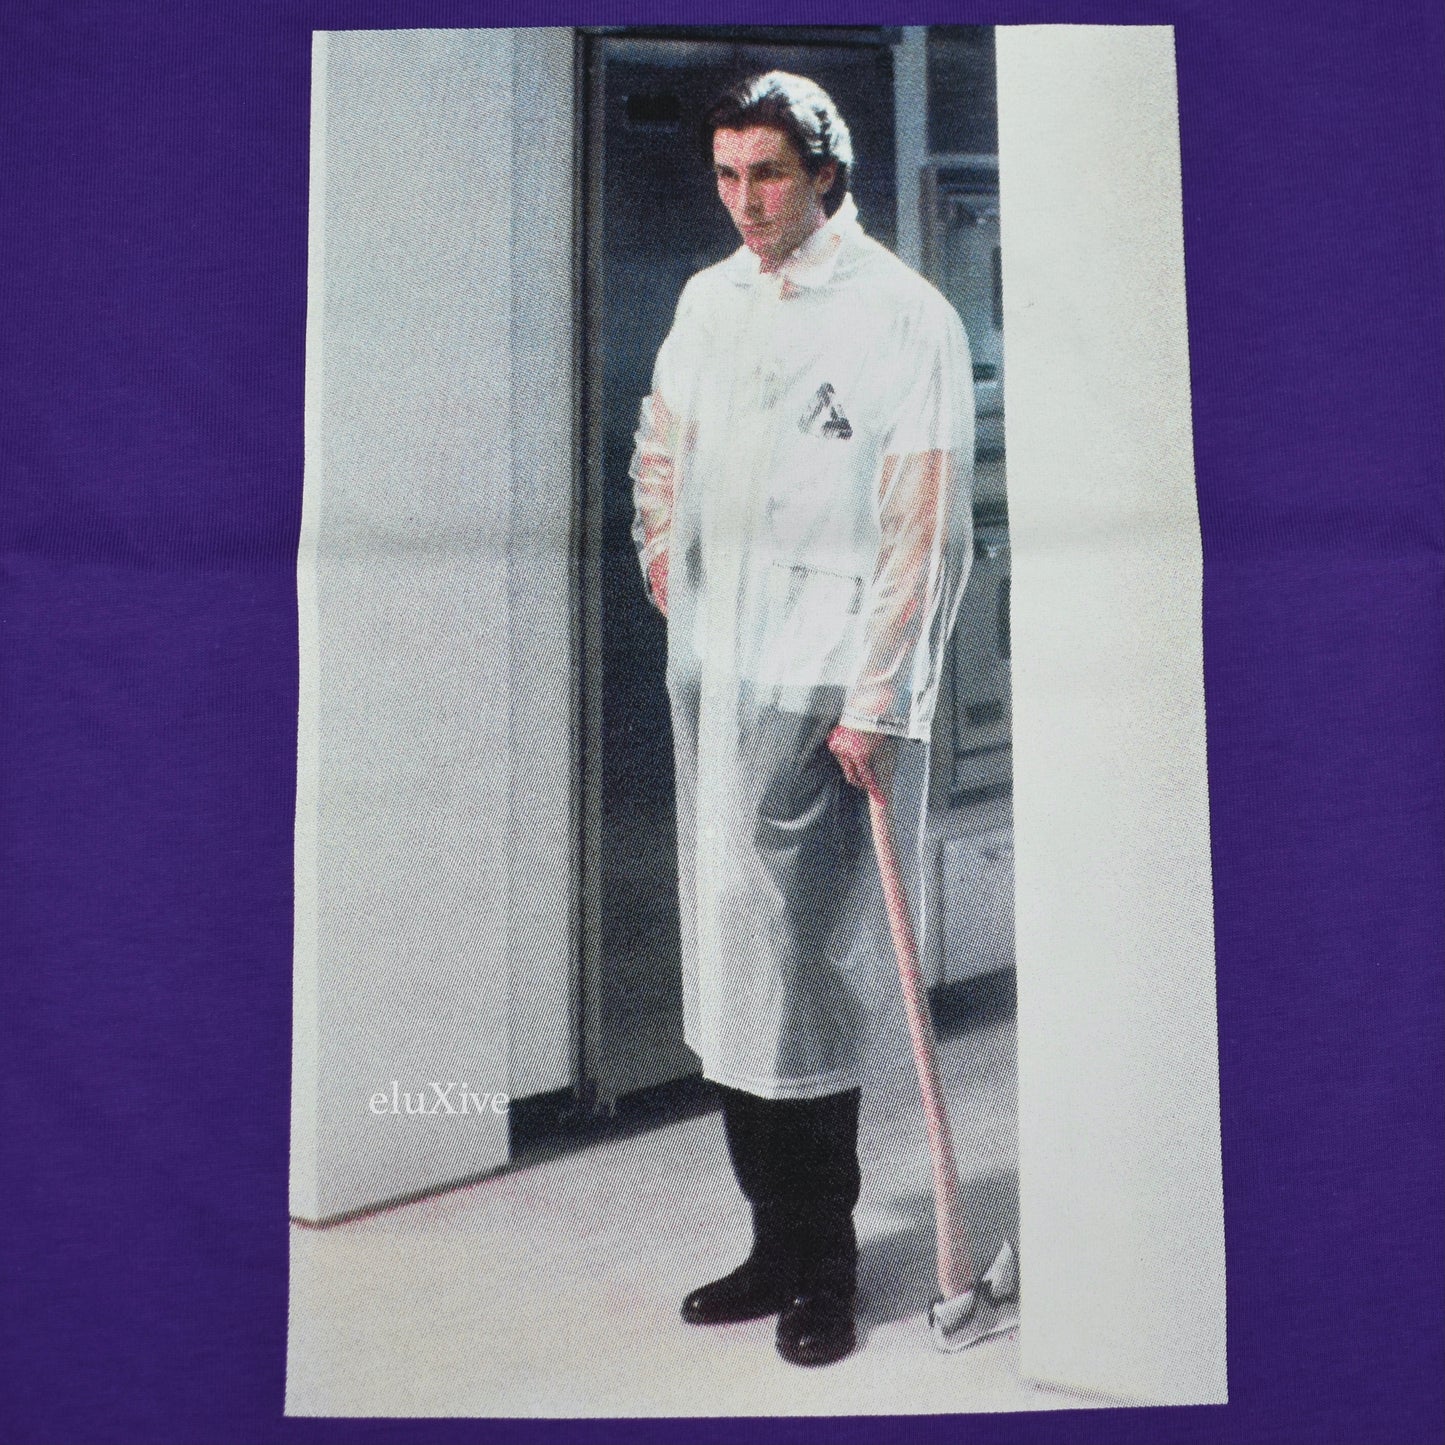 Palace - American Psycho Photo Print T-Shirt (Purple)